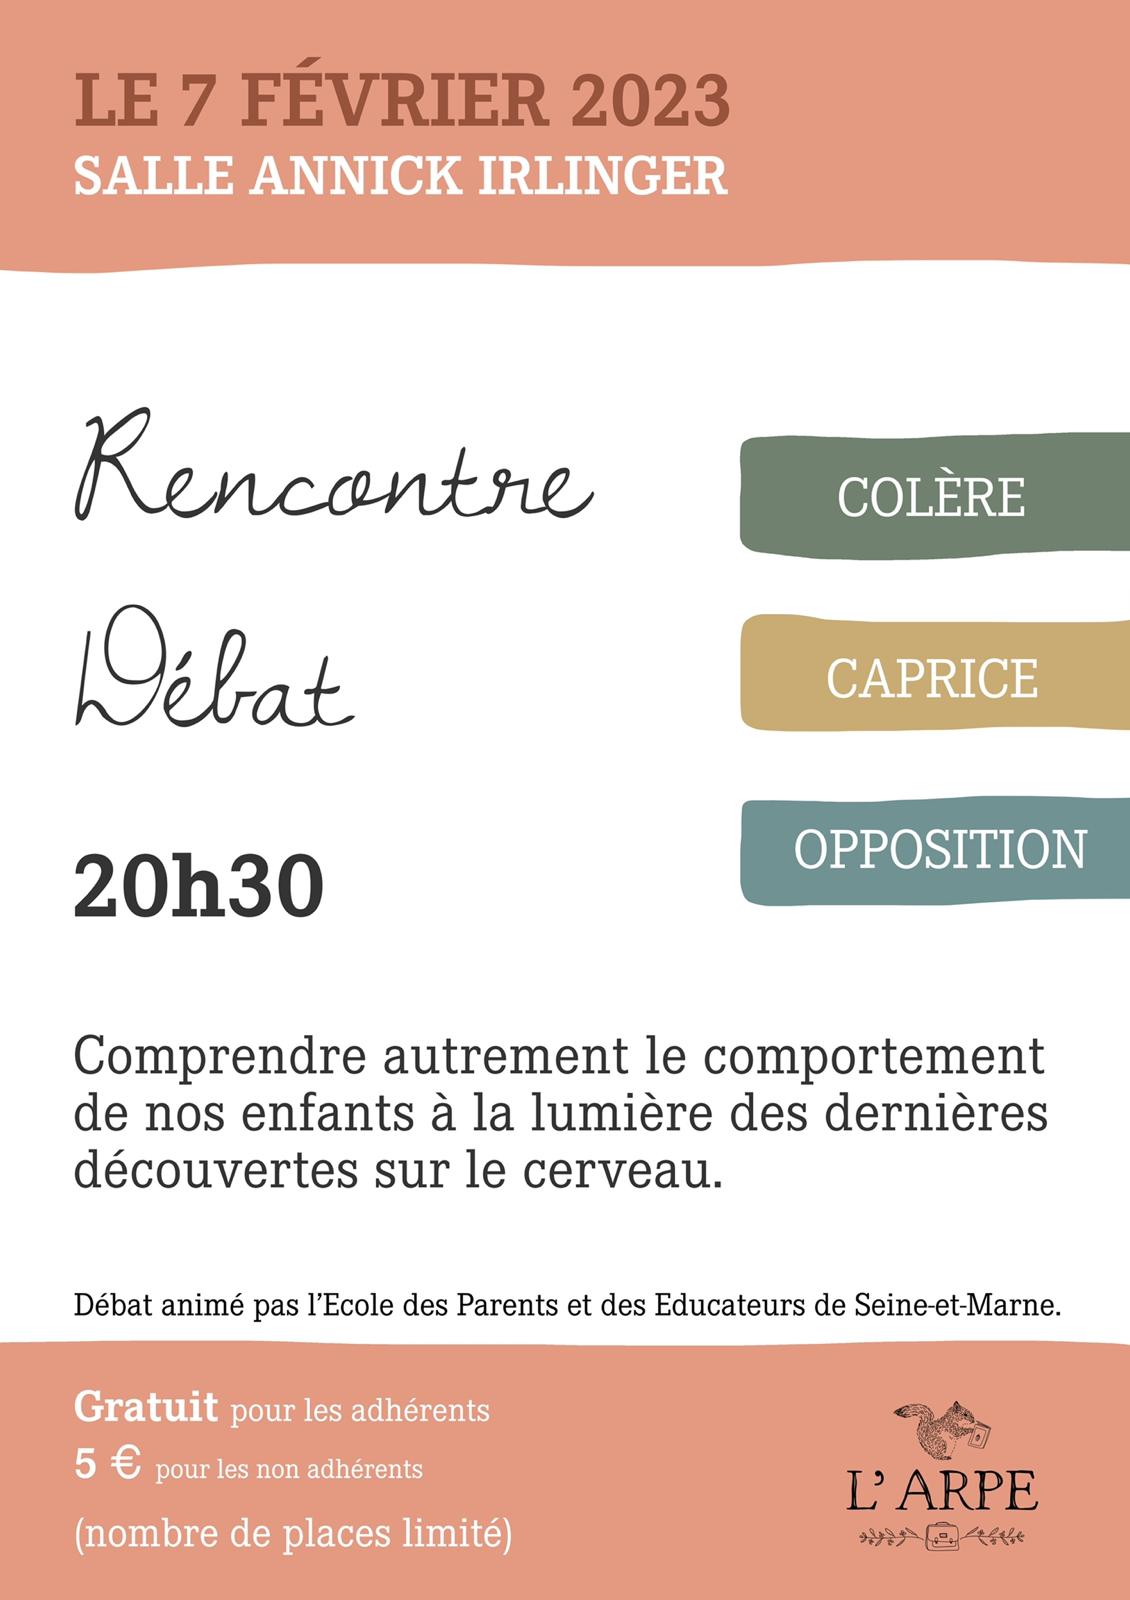 Rencontre débat - Colère, caprice, opposition, Arpe, association des parents d'élèves de Samois-sur-Seine